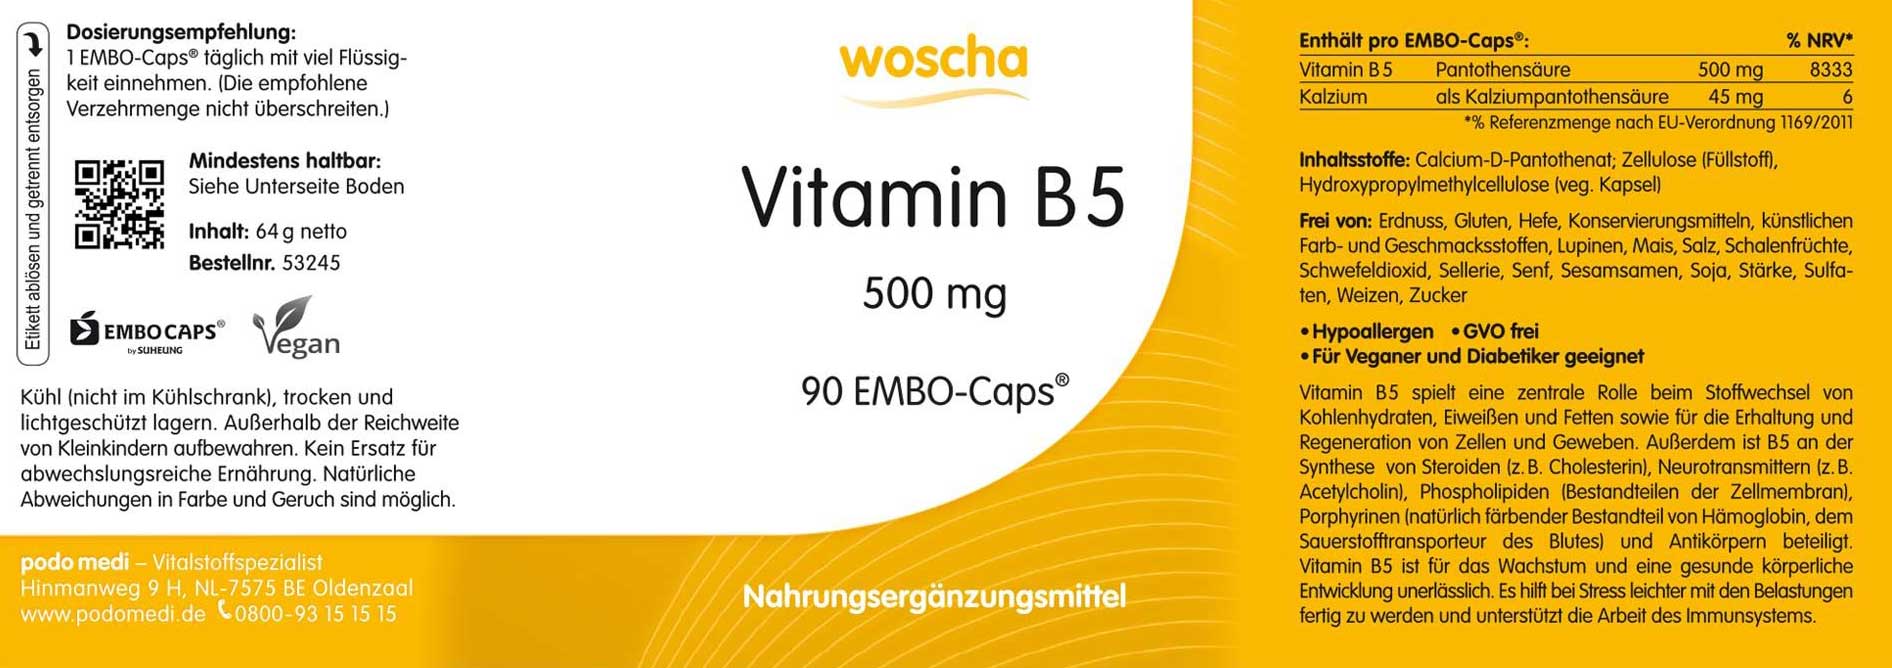 Woscha Vitamin B5 von podo medi beinhaltet 90 Kapseln Etikett